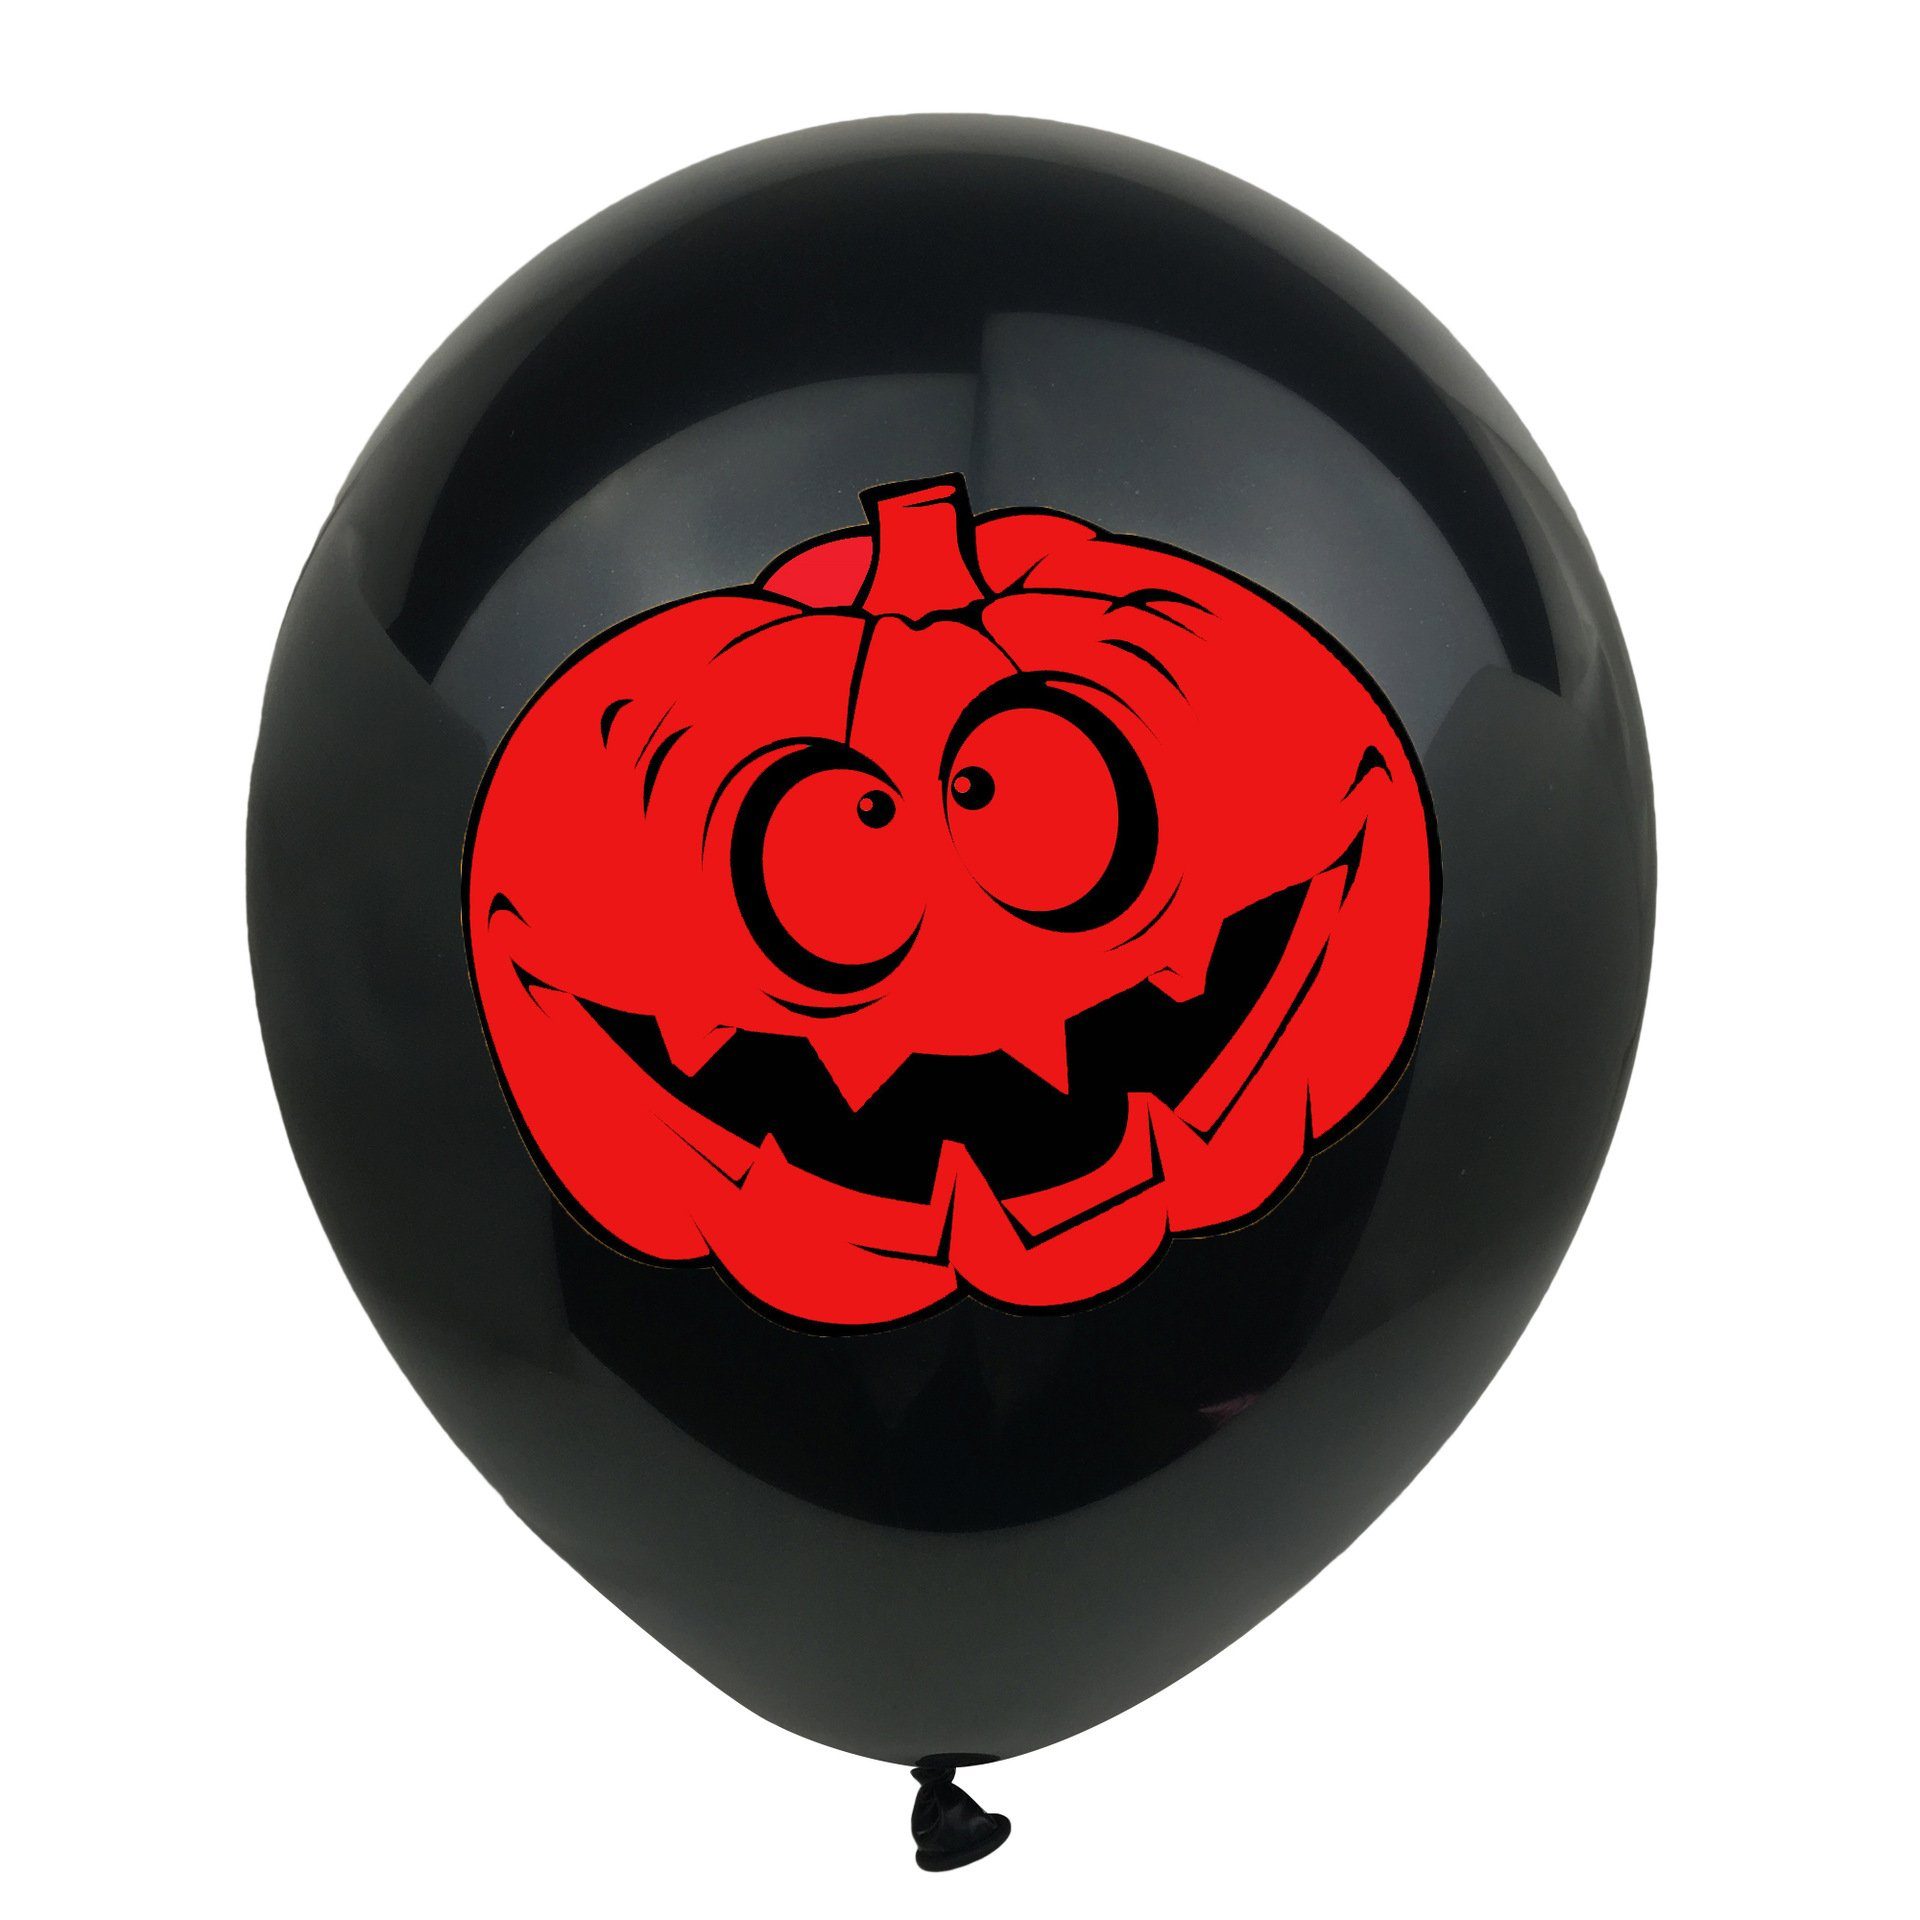 GelldG Dekoobjekt 60 Stück Halloween Halloween Deko Ballons Luftballons Halloween Set